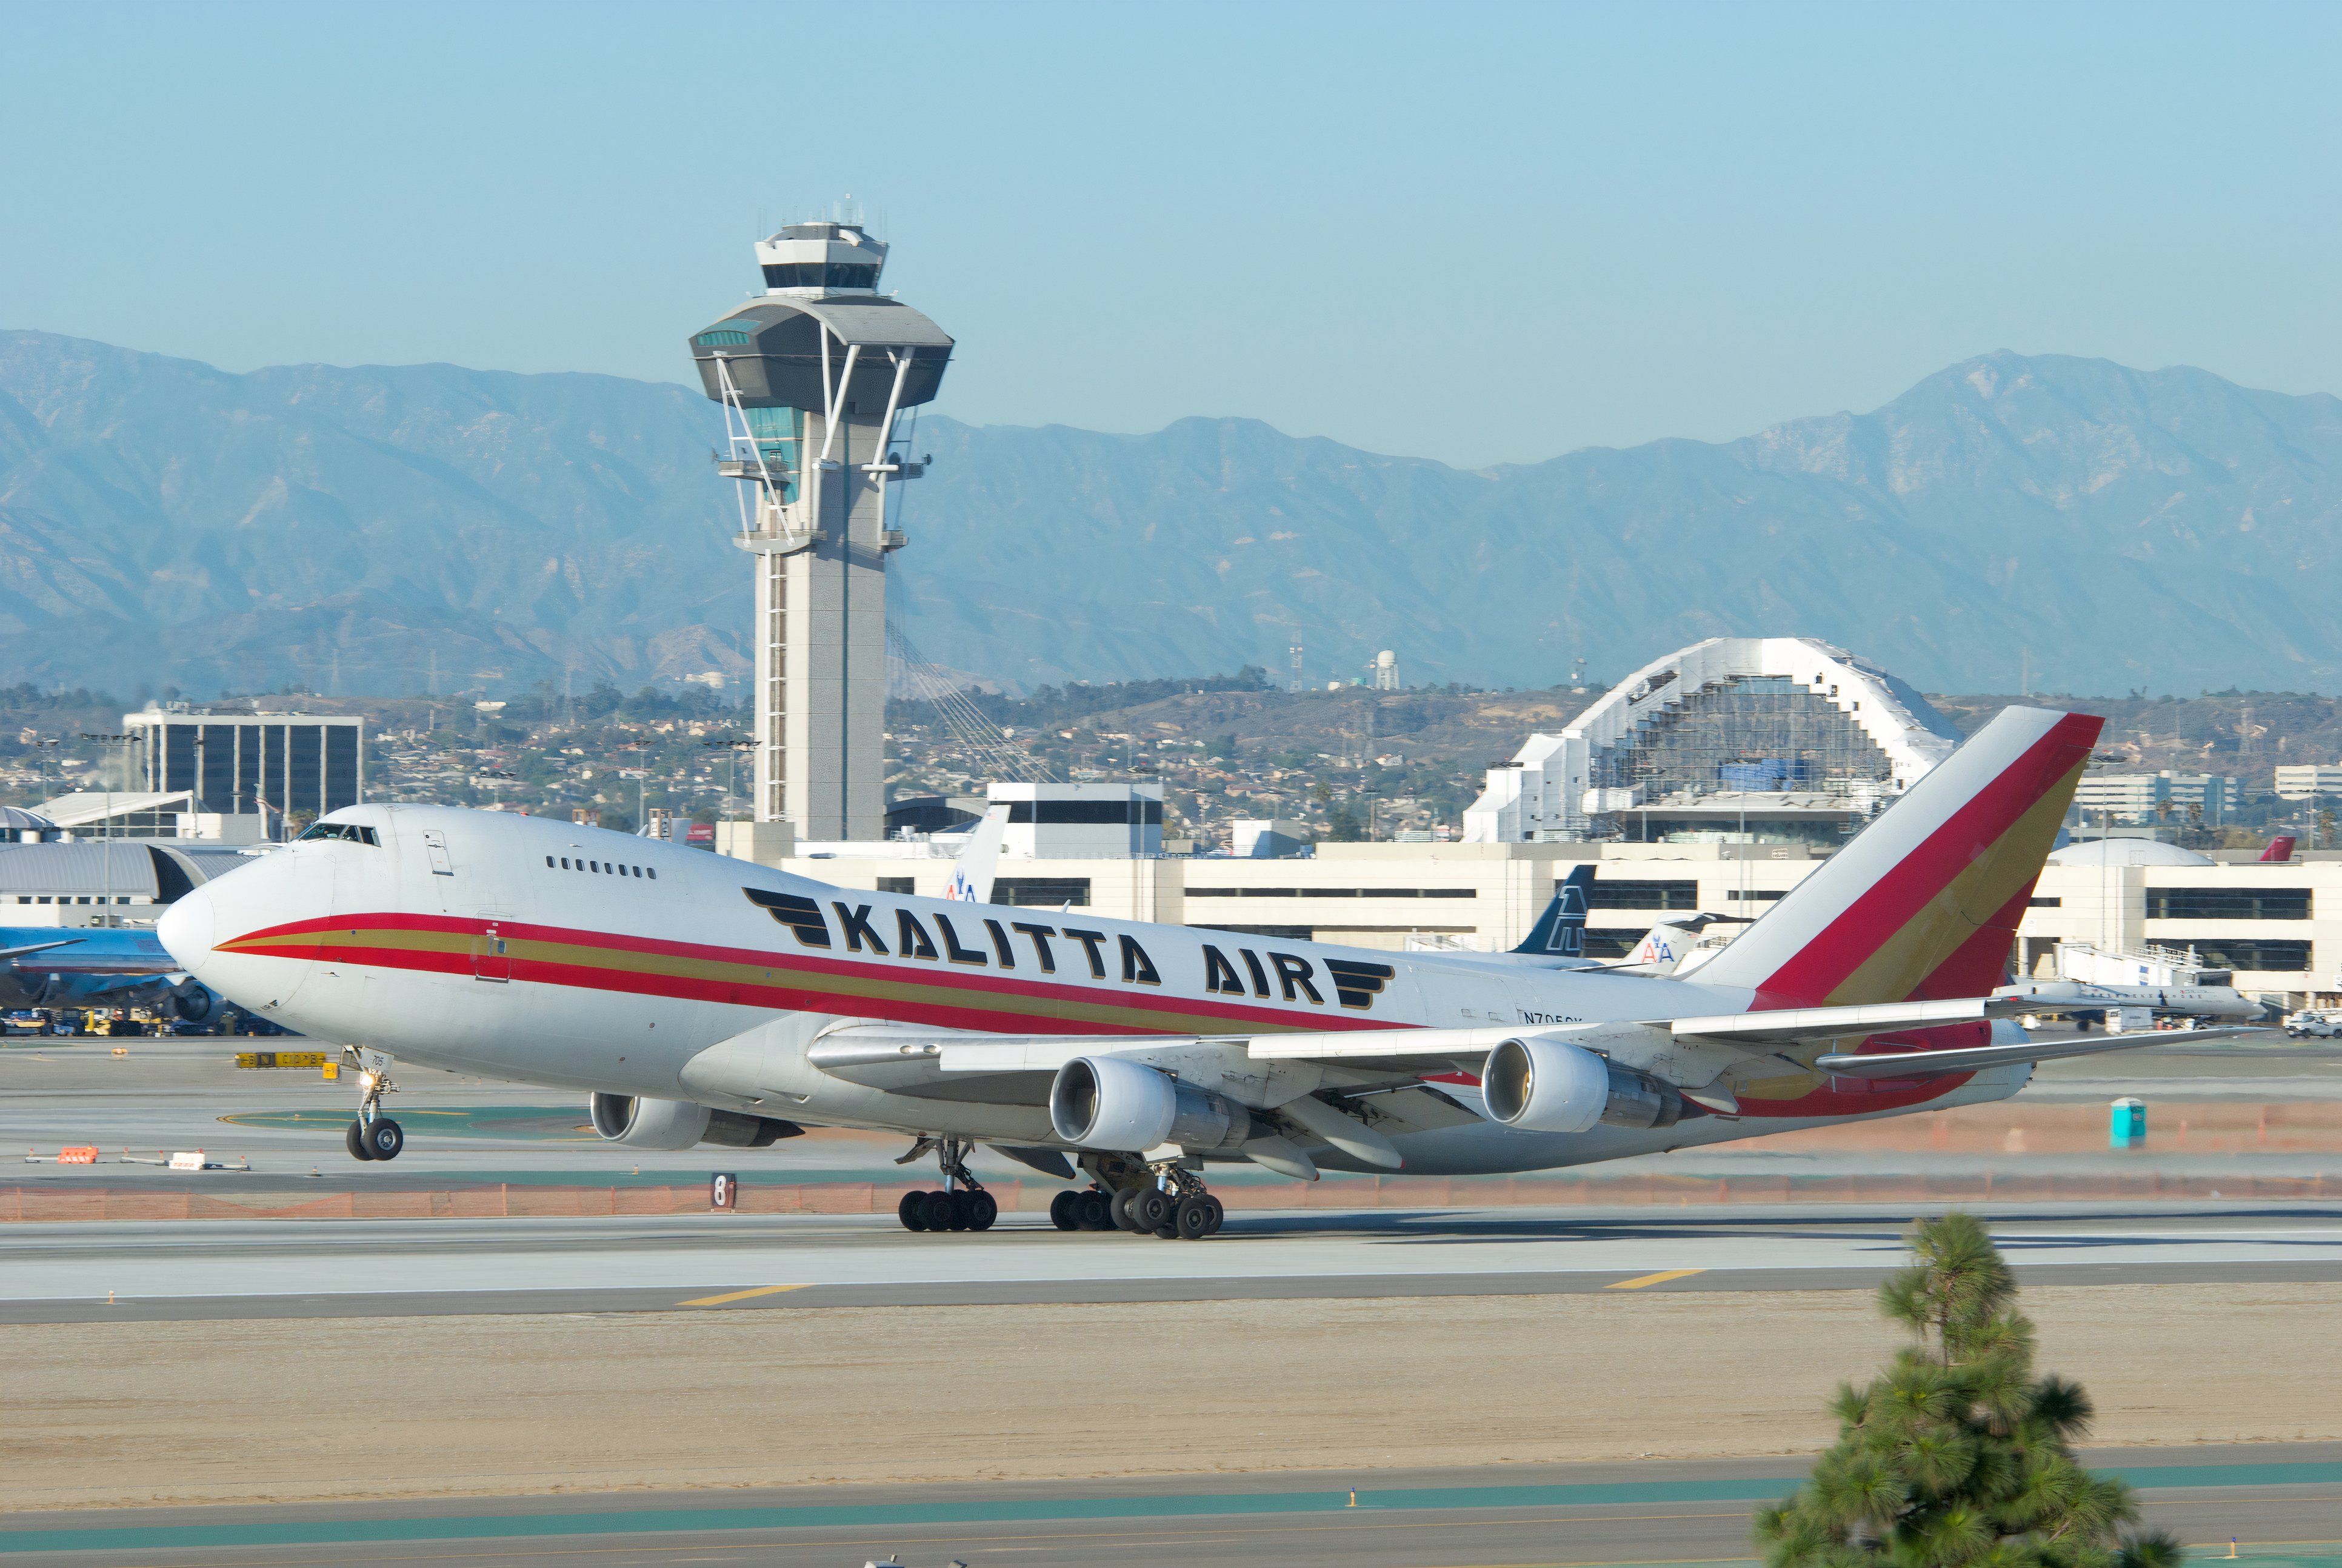 Kalitta Air Boeing 747-200 